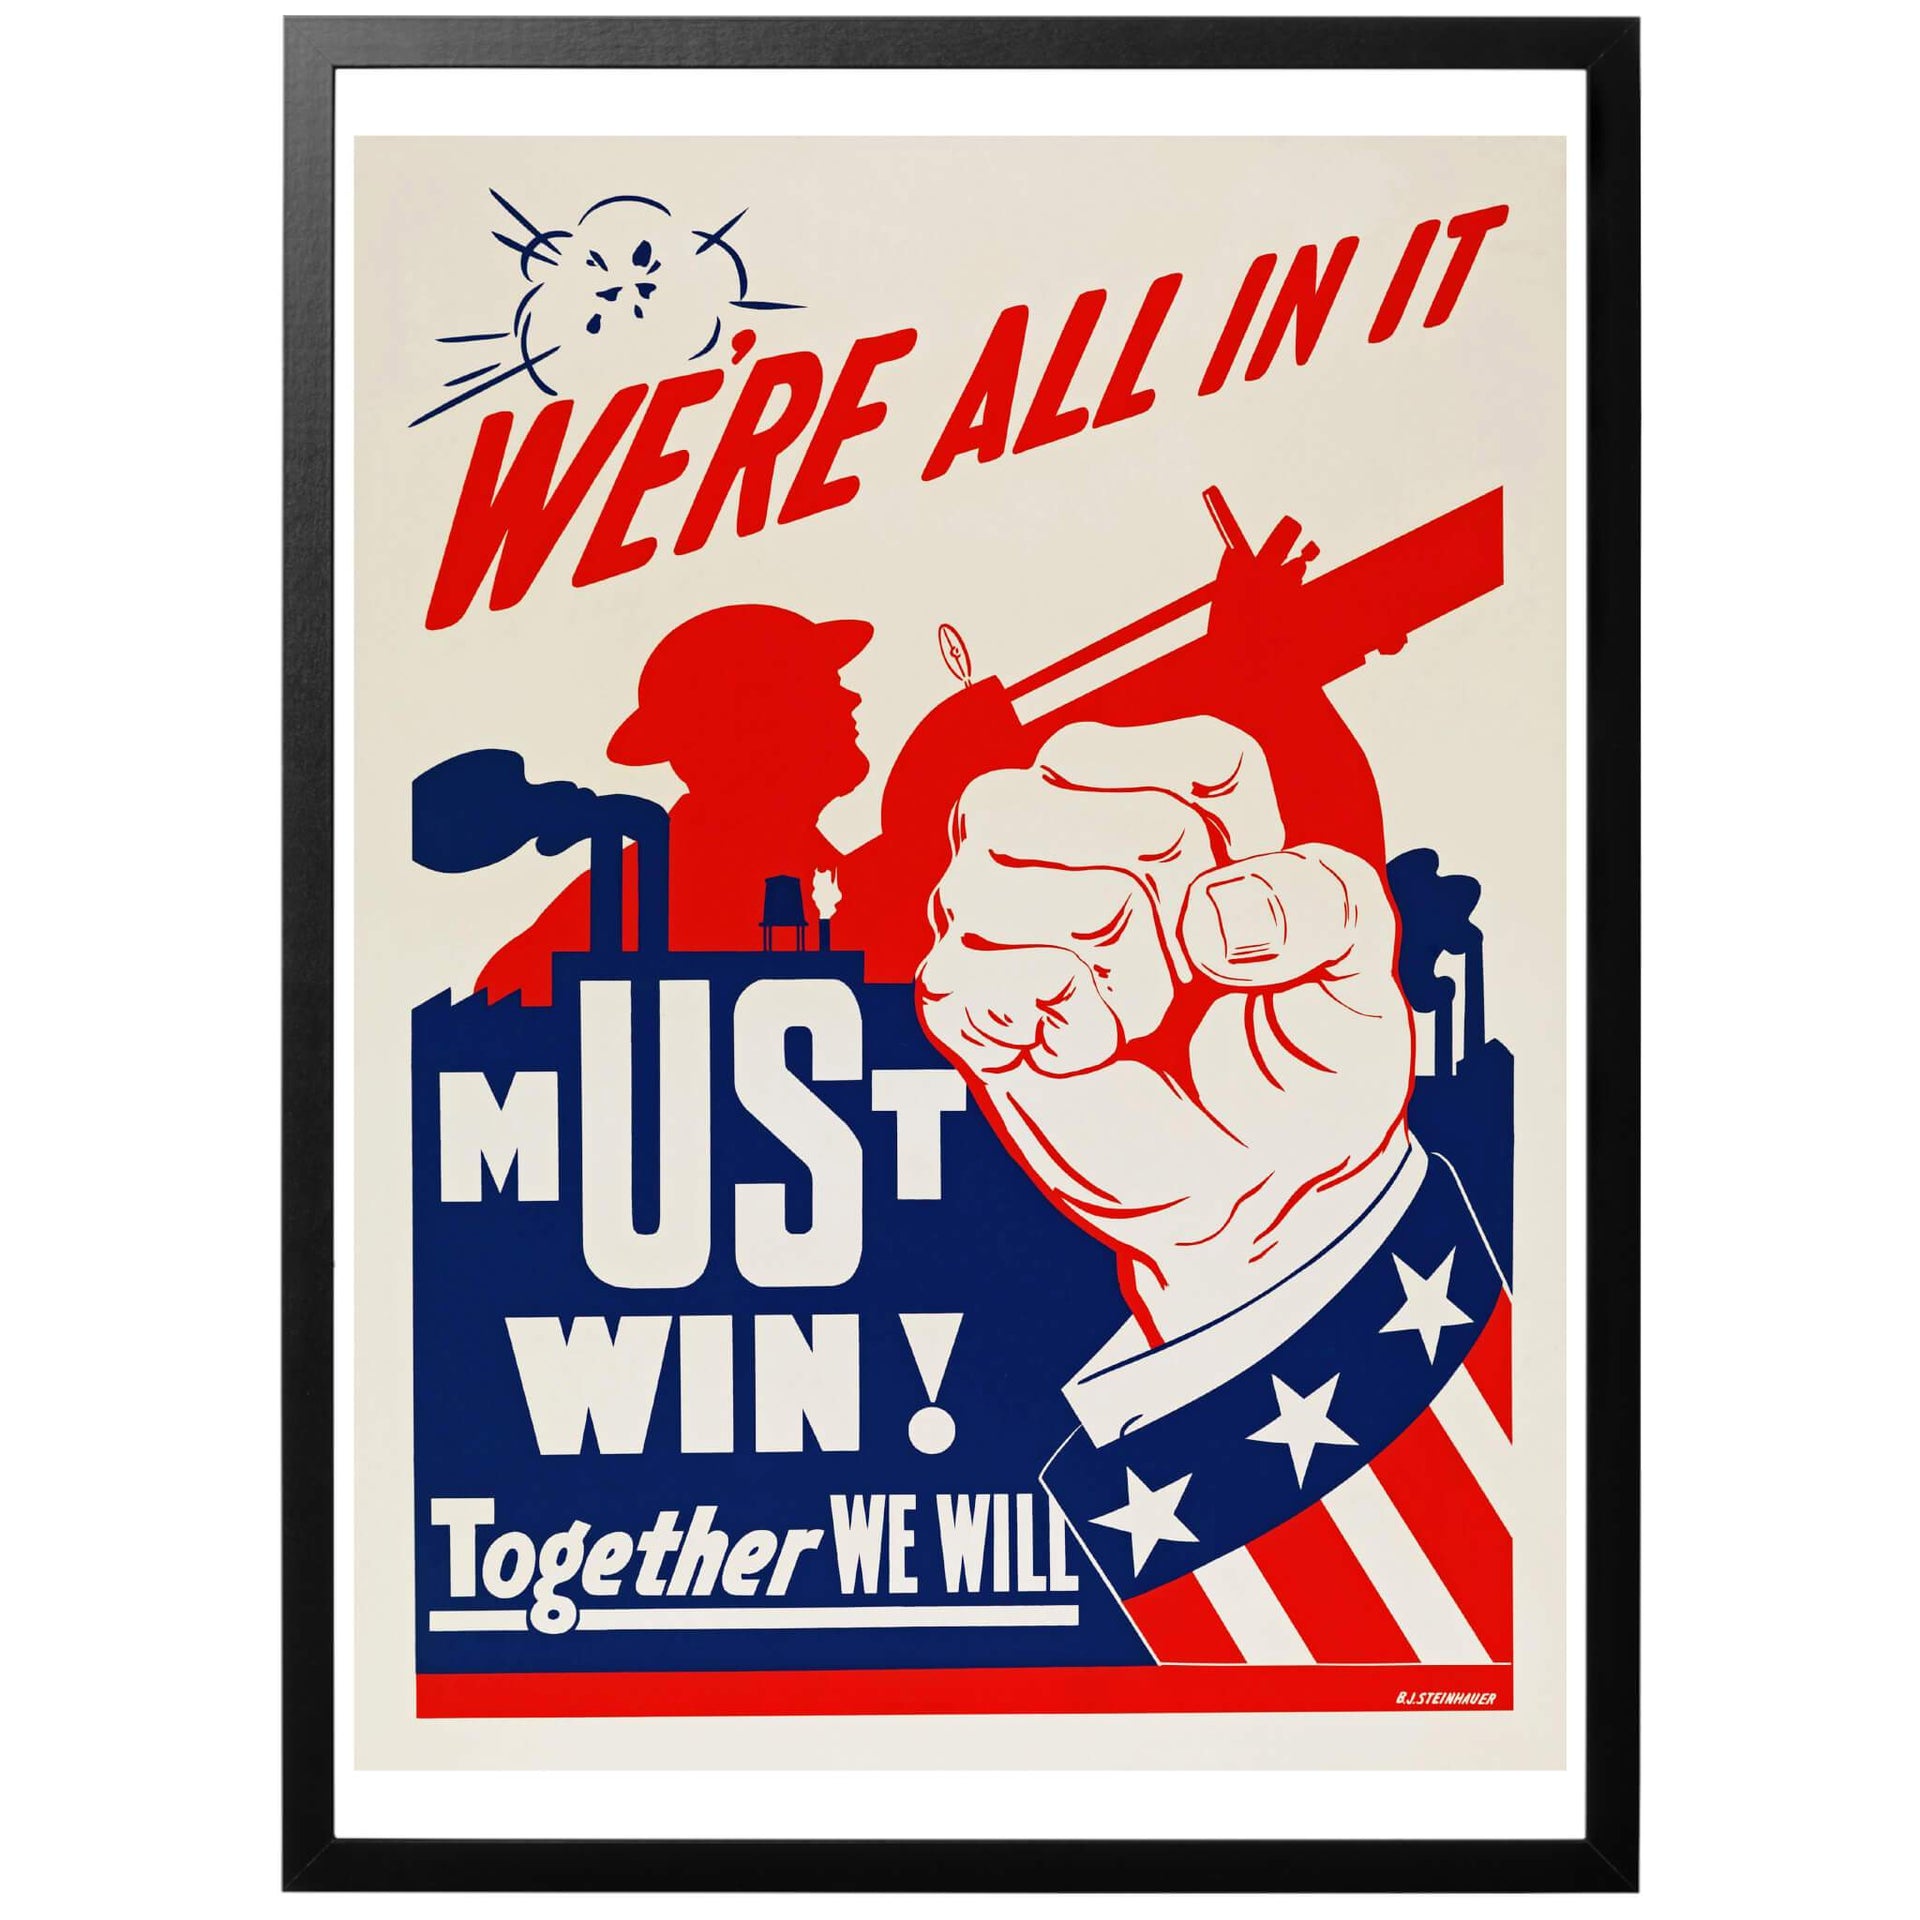 We're all in it - Must win! Together we will - Vi är alla i det - vi måste vinna! Tillsammans kommer vi vinna" Amerikansk WWII affisch. En poster med ett ganska dramatiskt motiv där industrins betydelse för kriget understryks. Köp den hos World War Era!